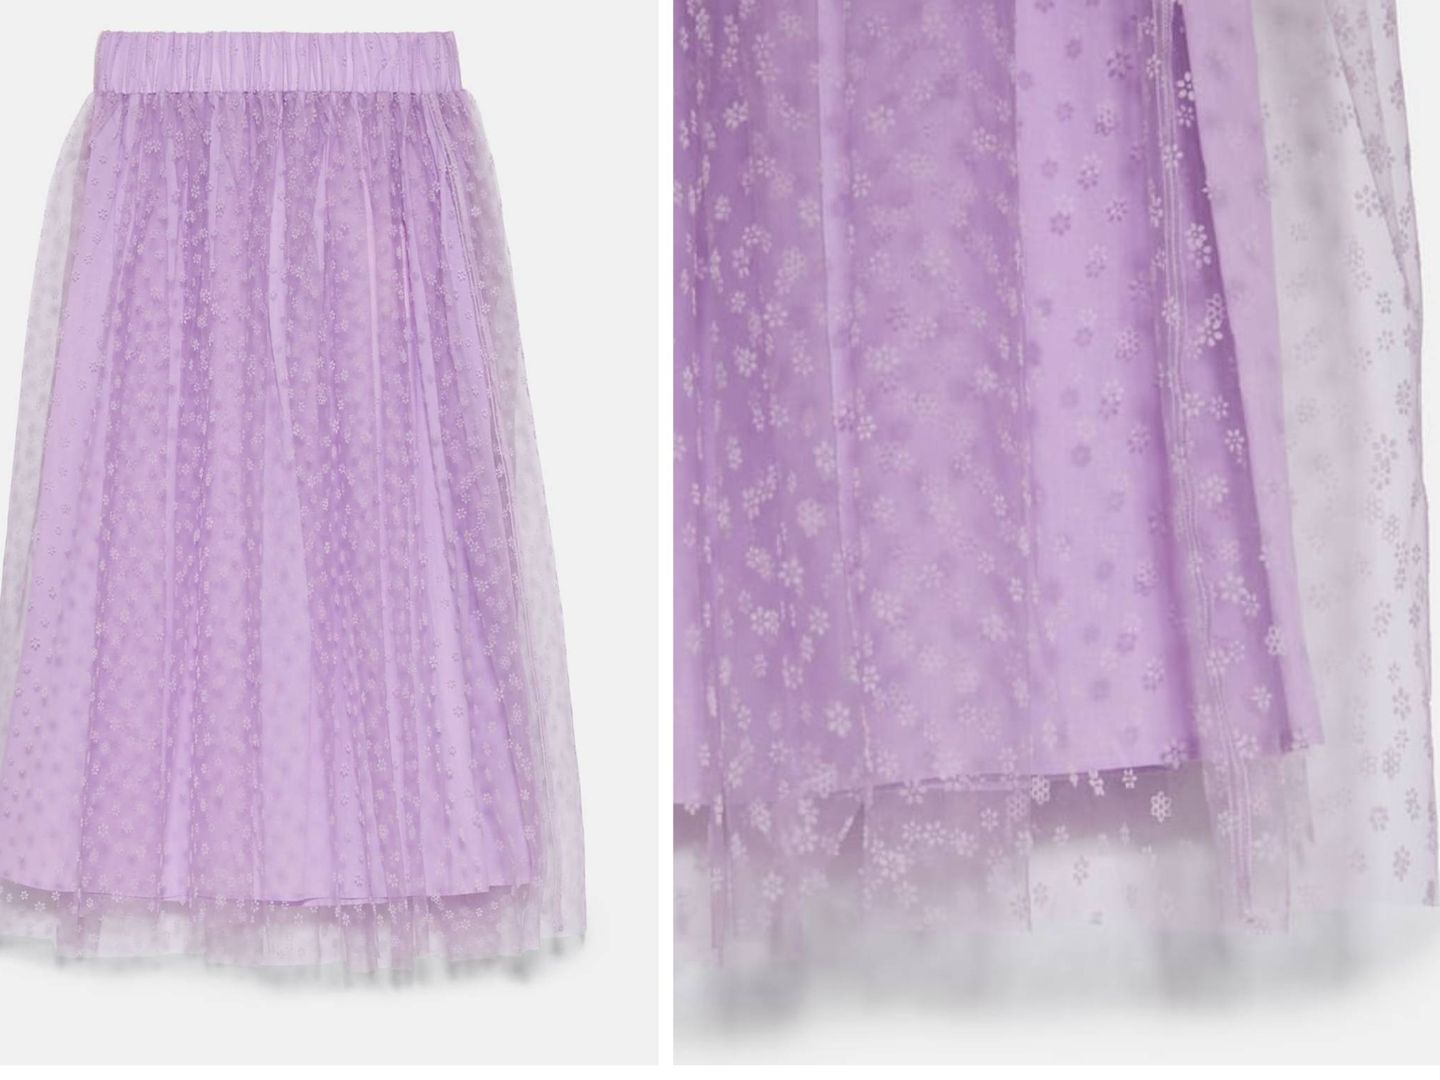 Nueva falda con inspiración Hollywood en Zara. (Cortesía)